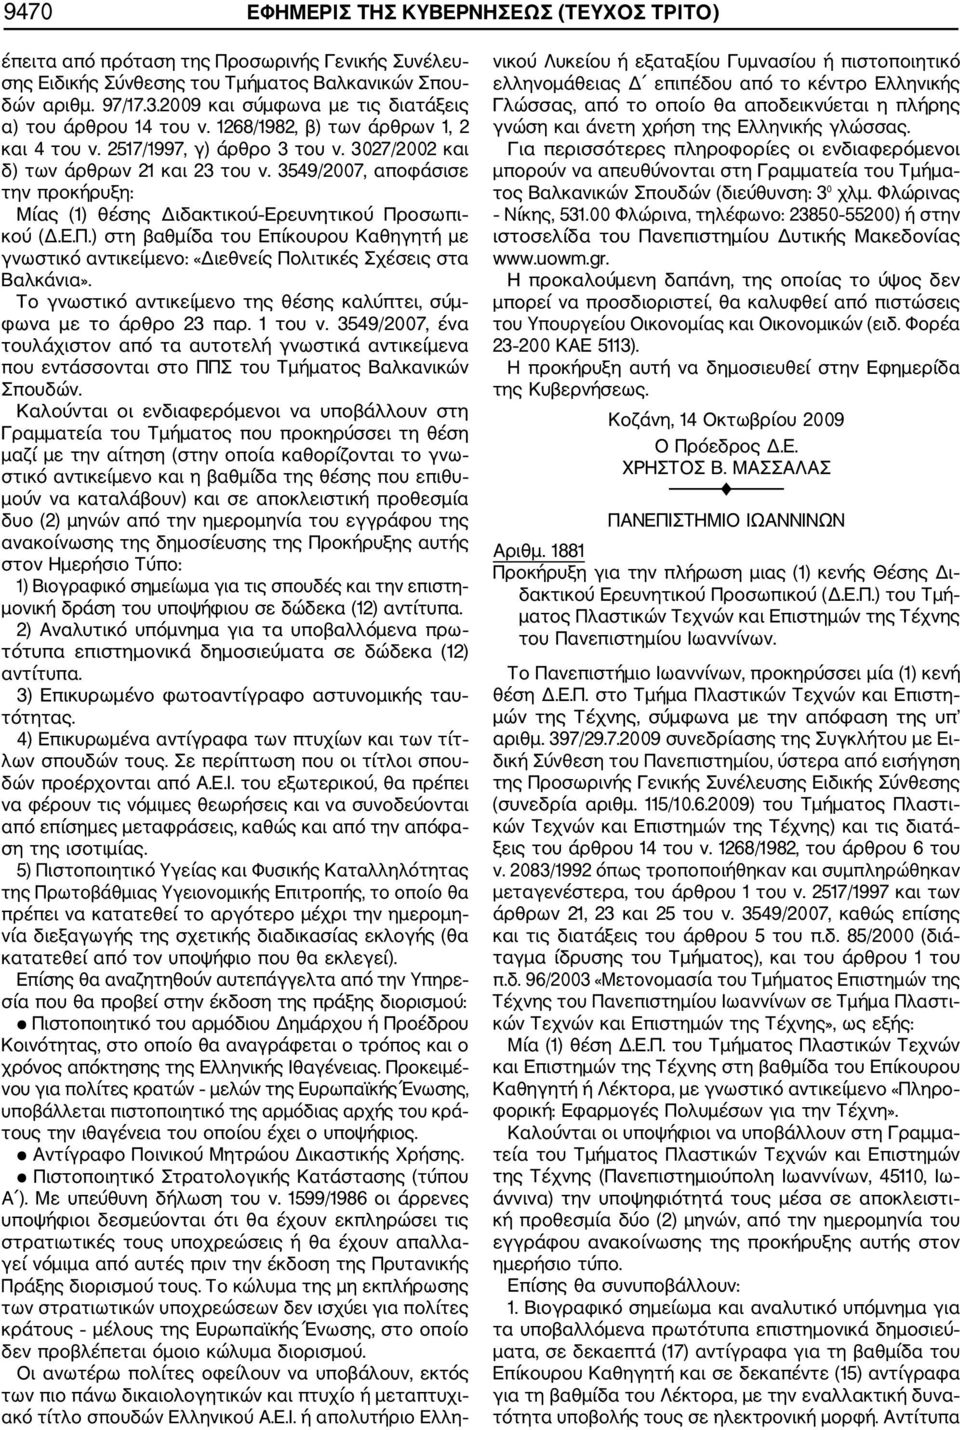 3549/2007, αποφάσισε την προκήρυξη: Μίας (1) θέσης Διδακτικού Ερευνητικού Προσωπι κού (Δ.Ε.Π.) στη βαθμίδα του Επίκουρου Καθηγητή με γνωστικό αντικείμενο: «Διεθνείς Πολιτικές Σχέσεις στα Βαλκάνια».